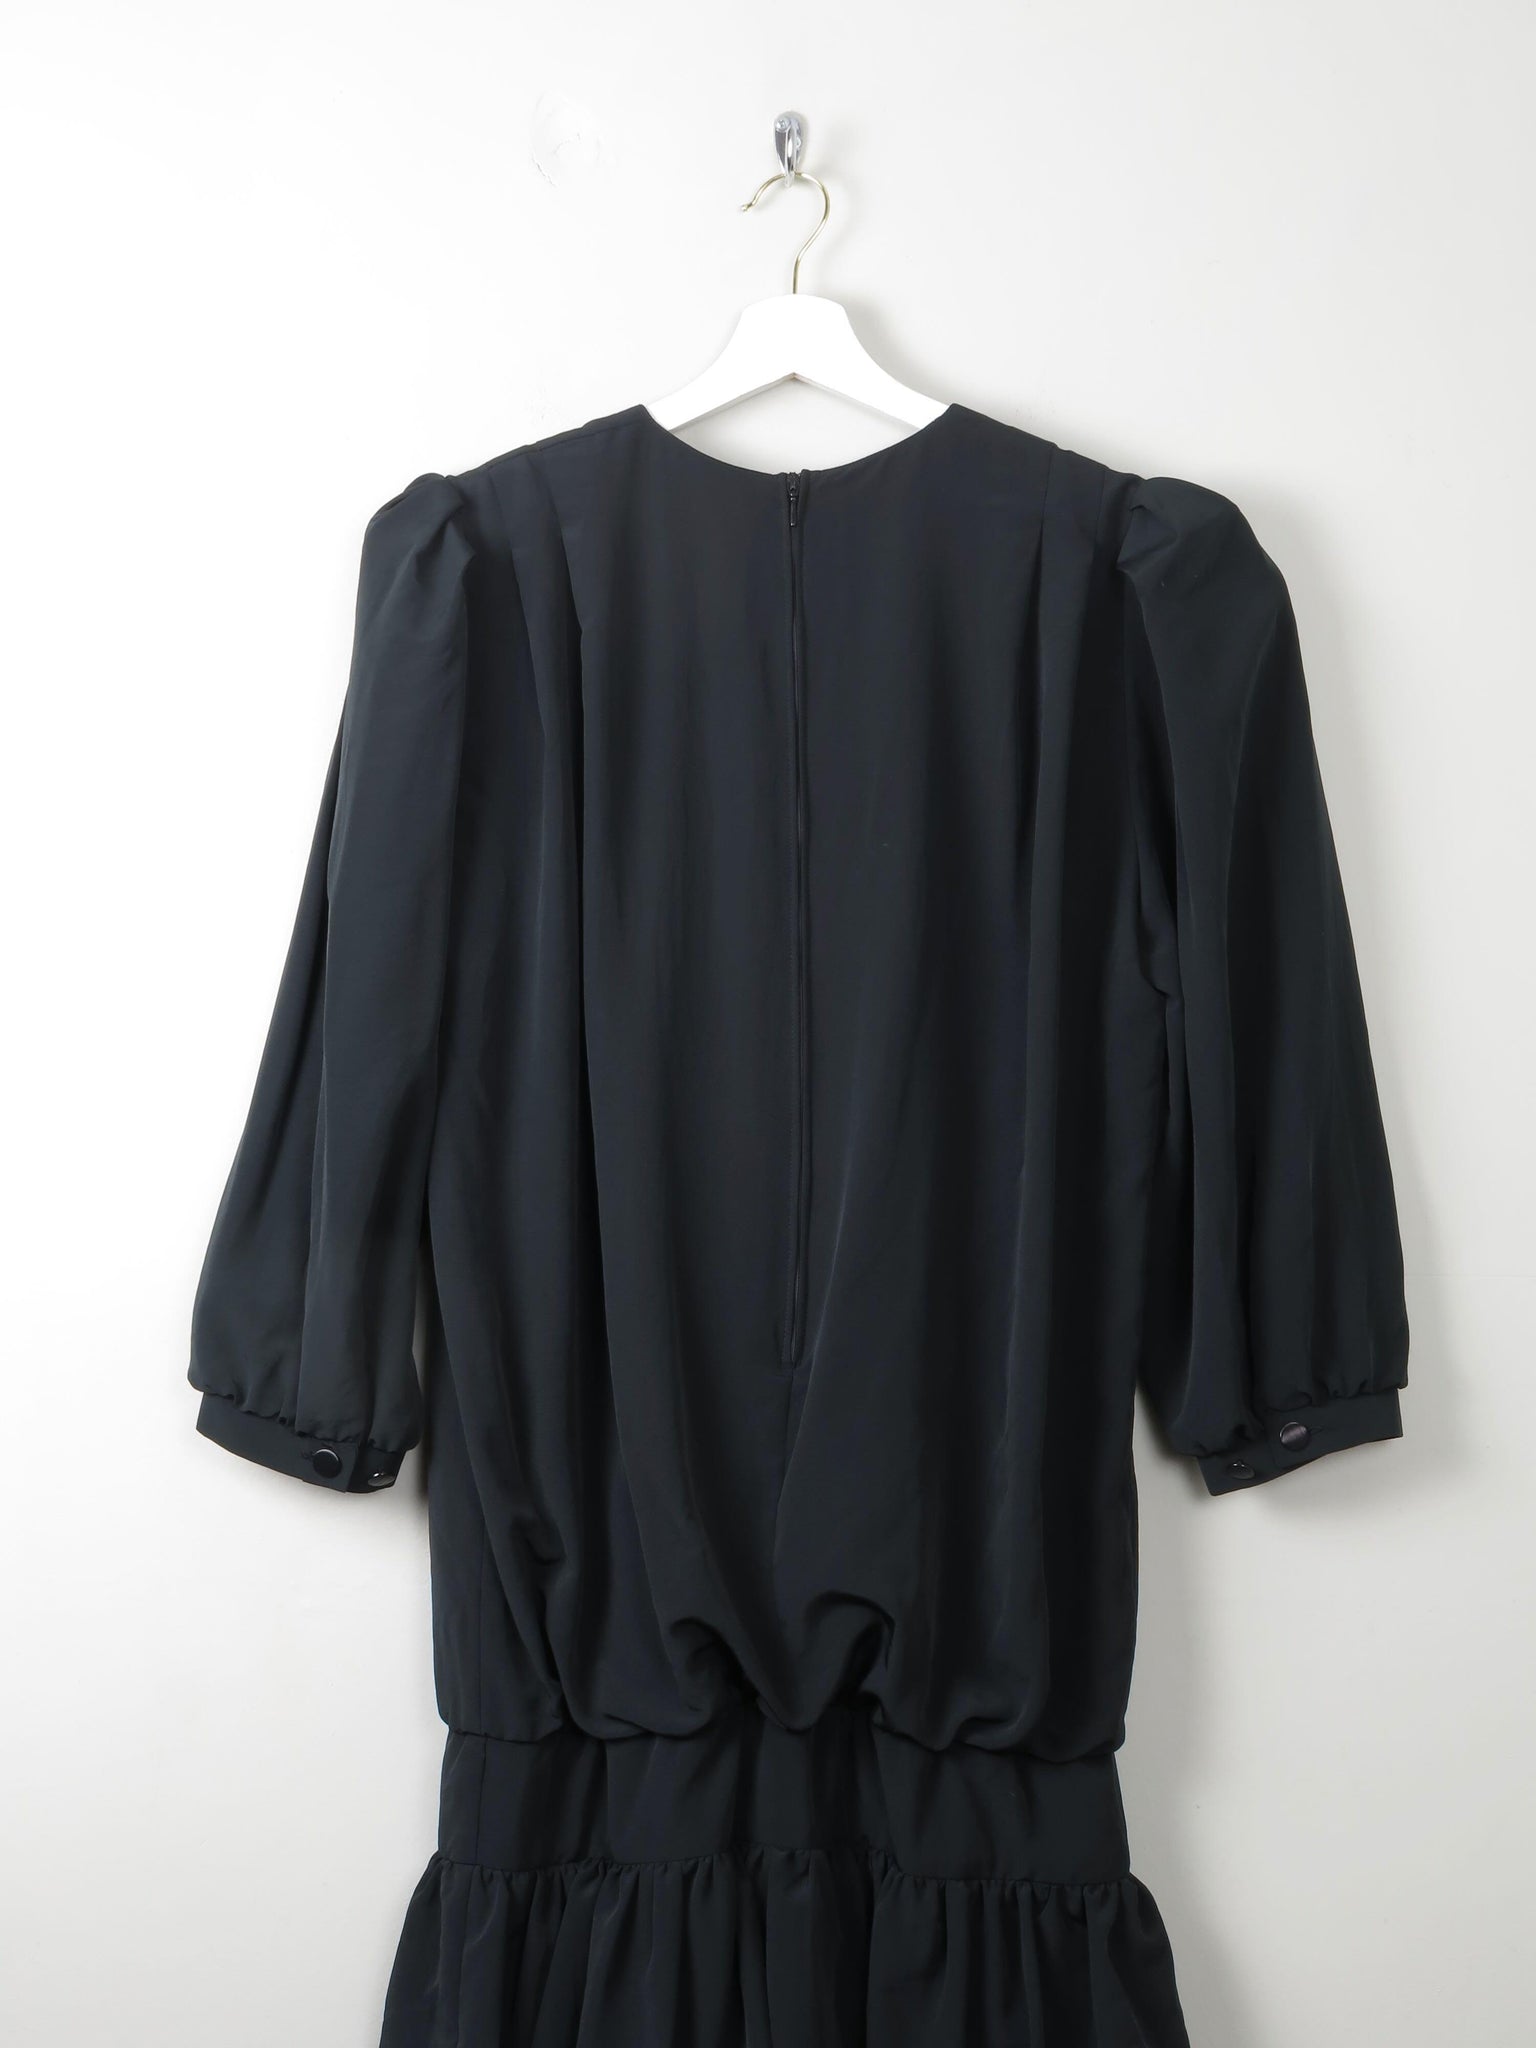 Vintage Black 1980s Dress 10 - The Harlequin